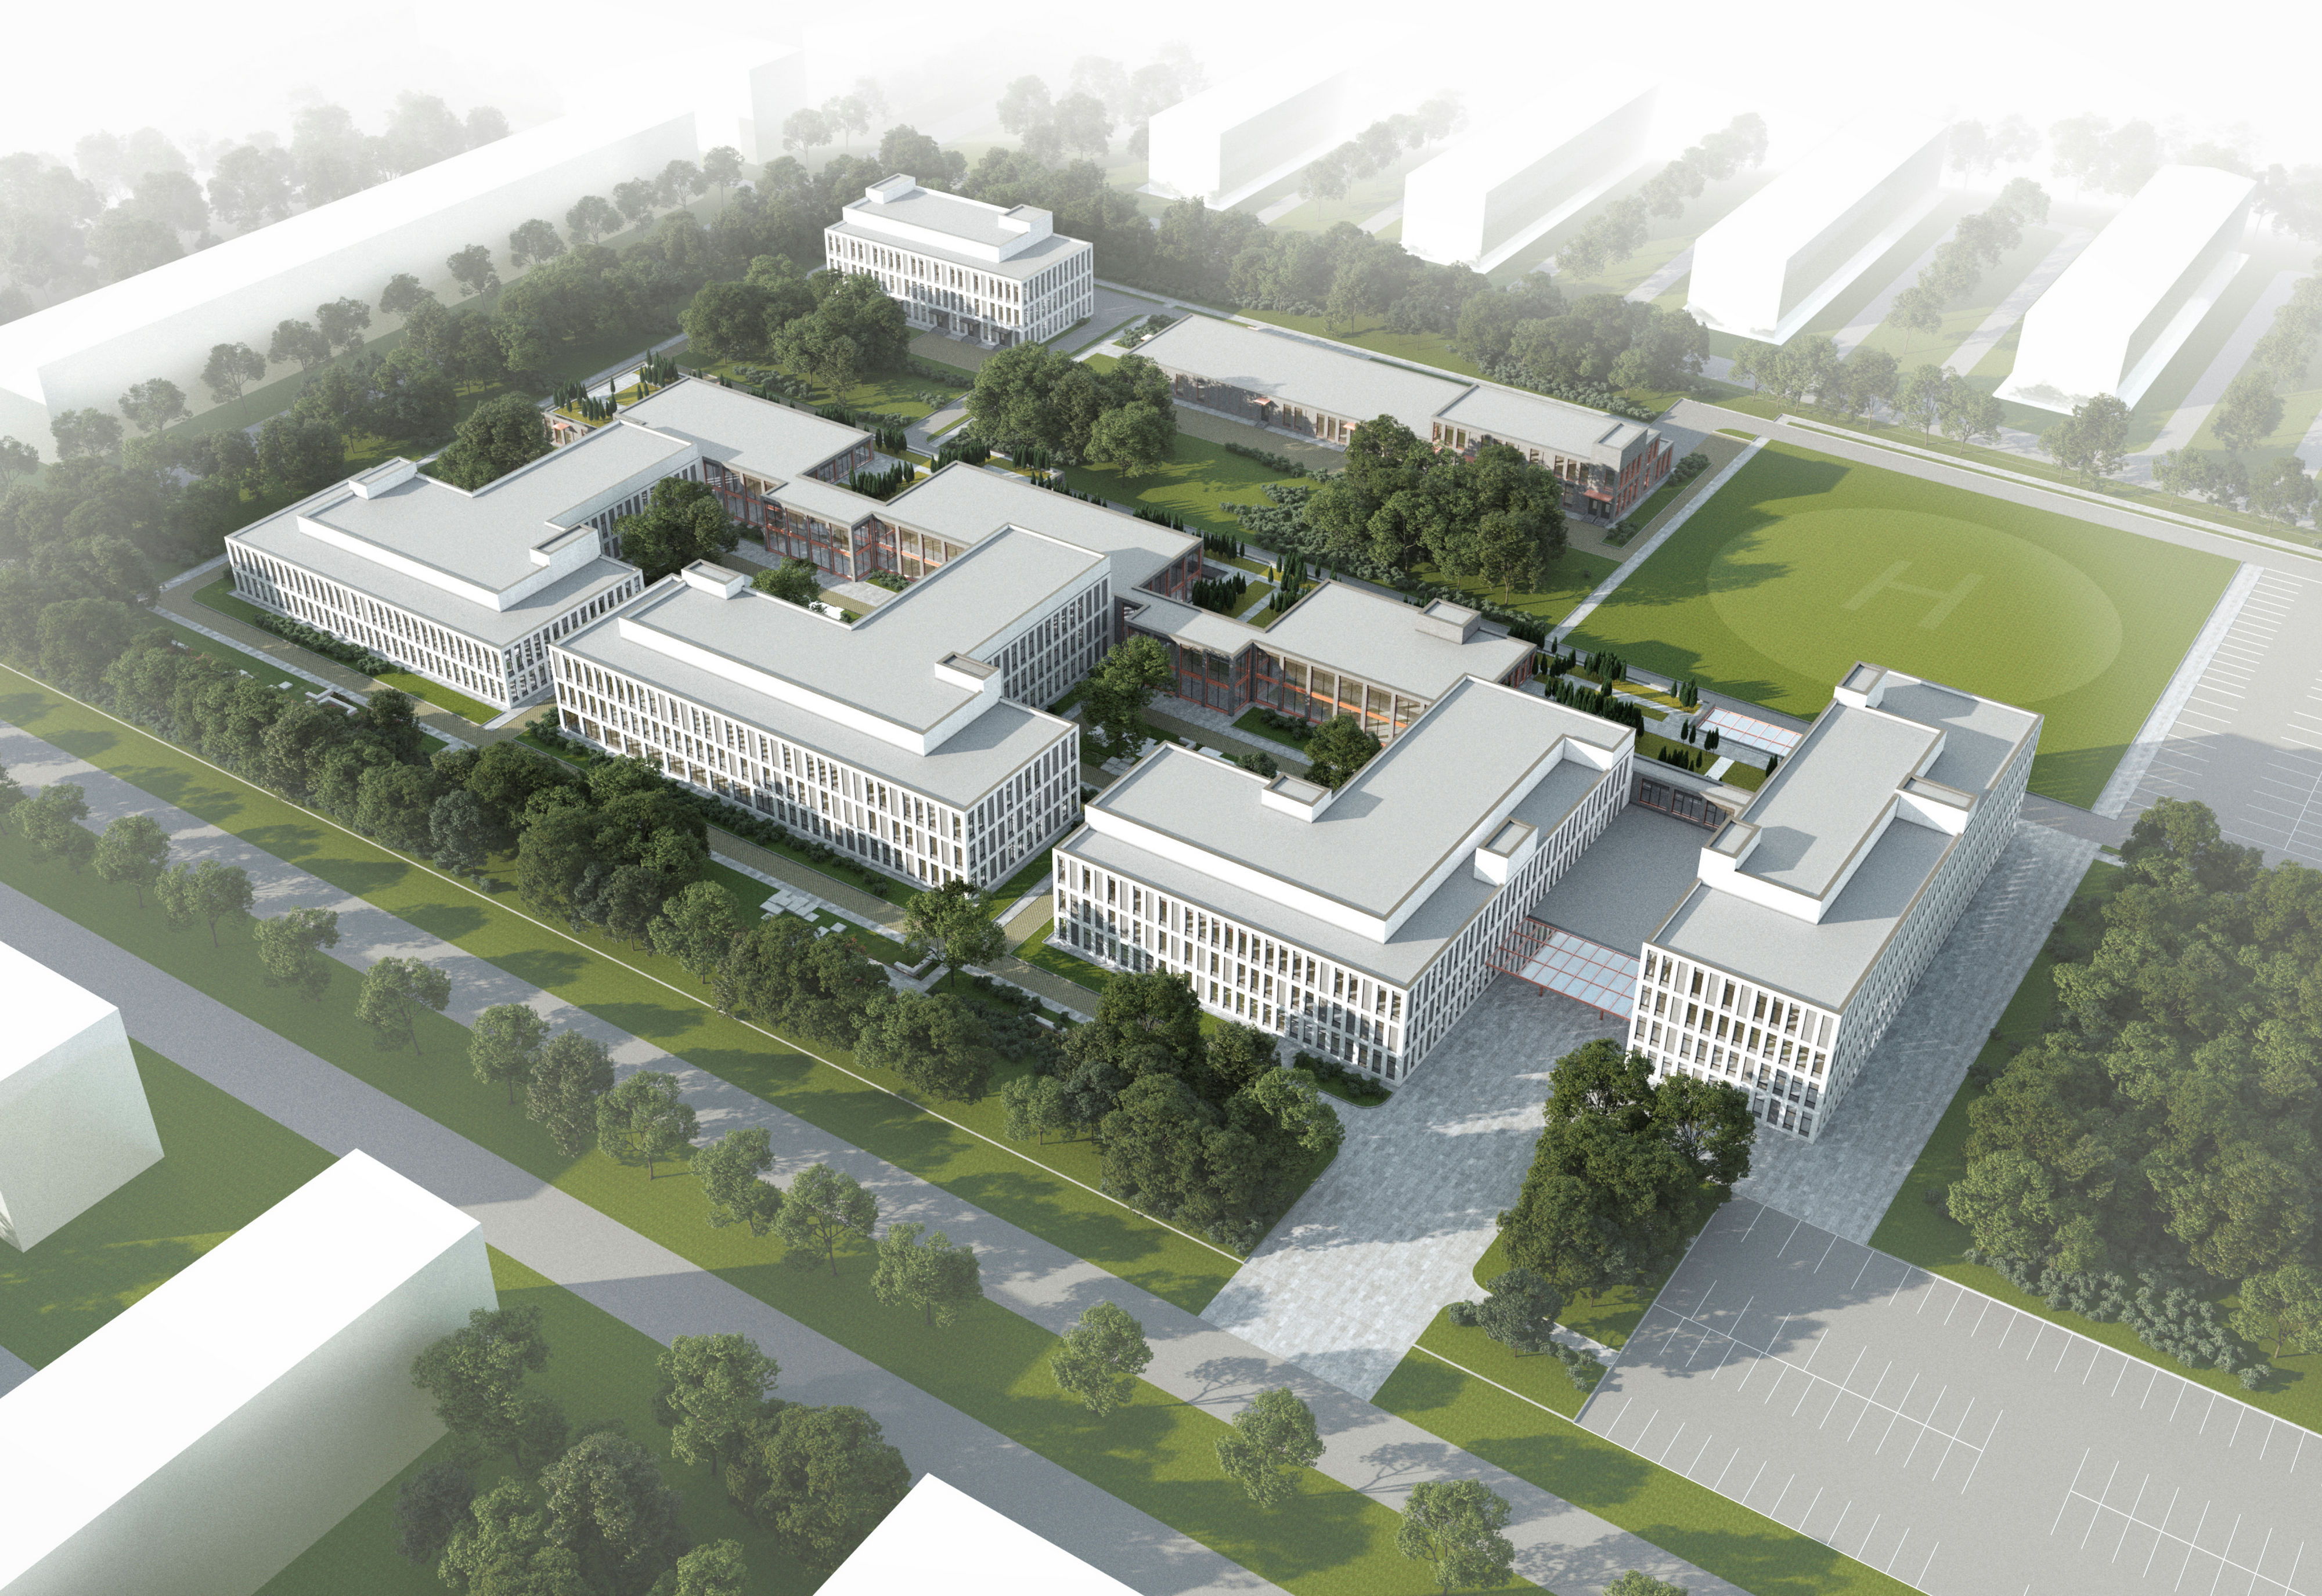 Проект центральной районной больницы проектной мощностью на 240 коек. ООО «Гинзбург и Архитекторы», г. Москва